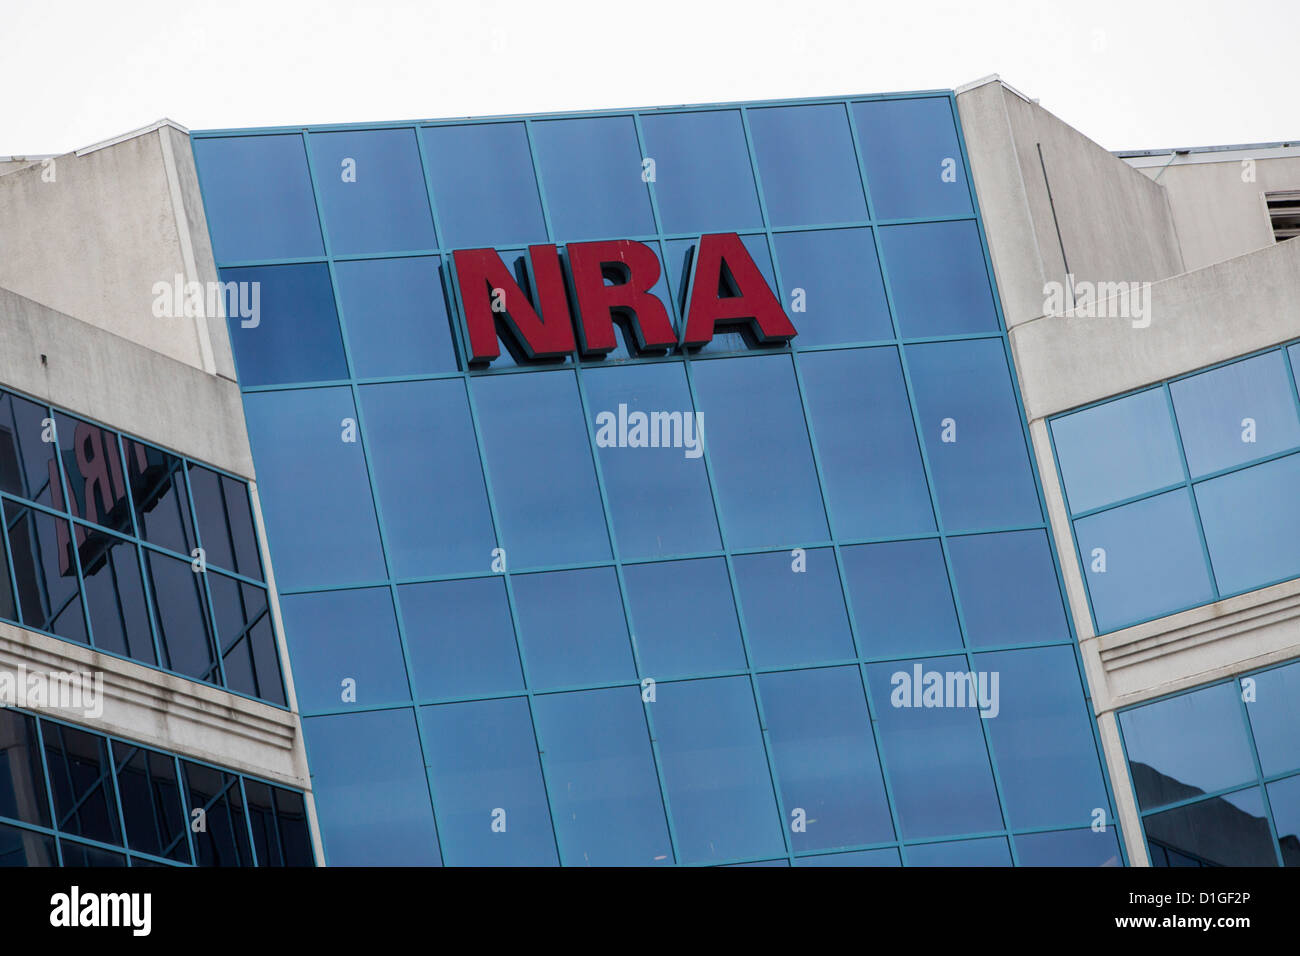 Der Hauptsitz der National Rifle Association, auch bekannt als die NRA. Stockfoto